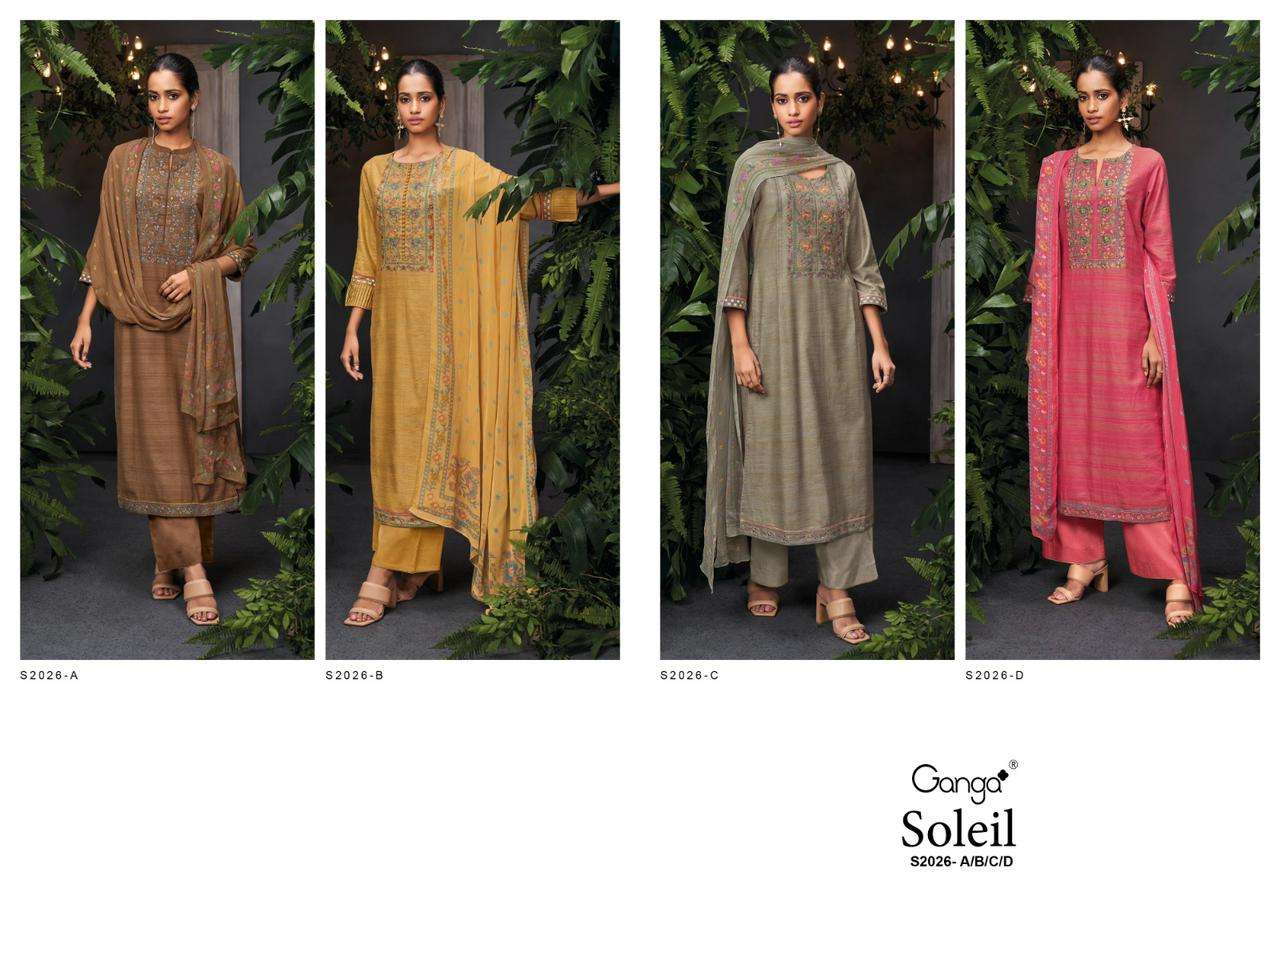 ganga soleil 2026 designer woven solid embroidred party wear salwar kameez wholesale dealer surat